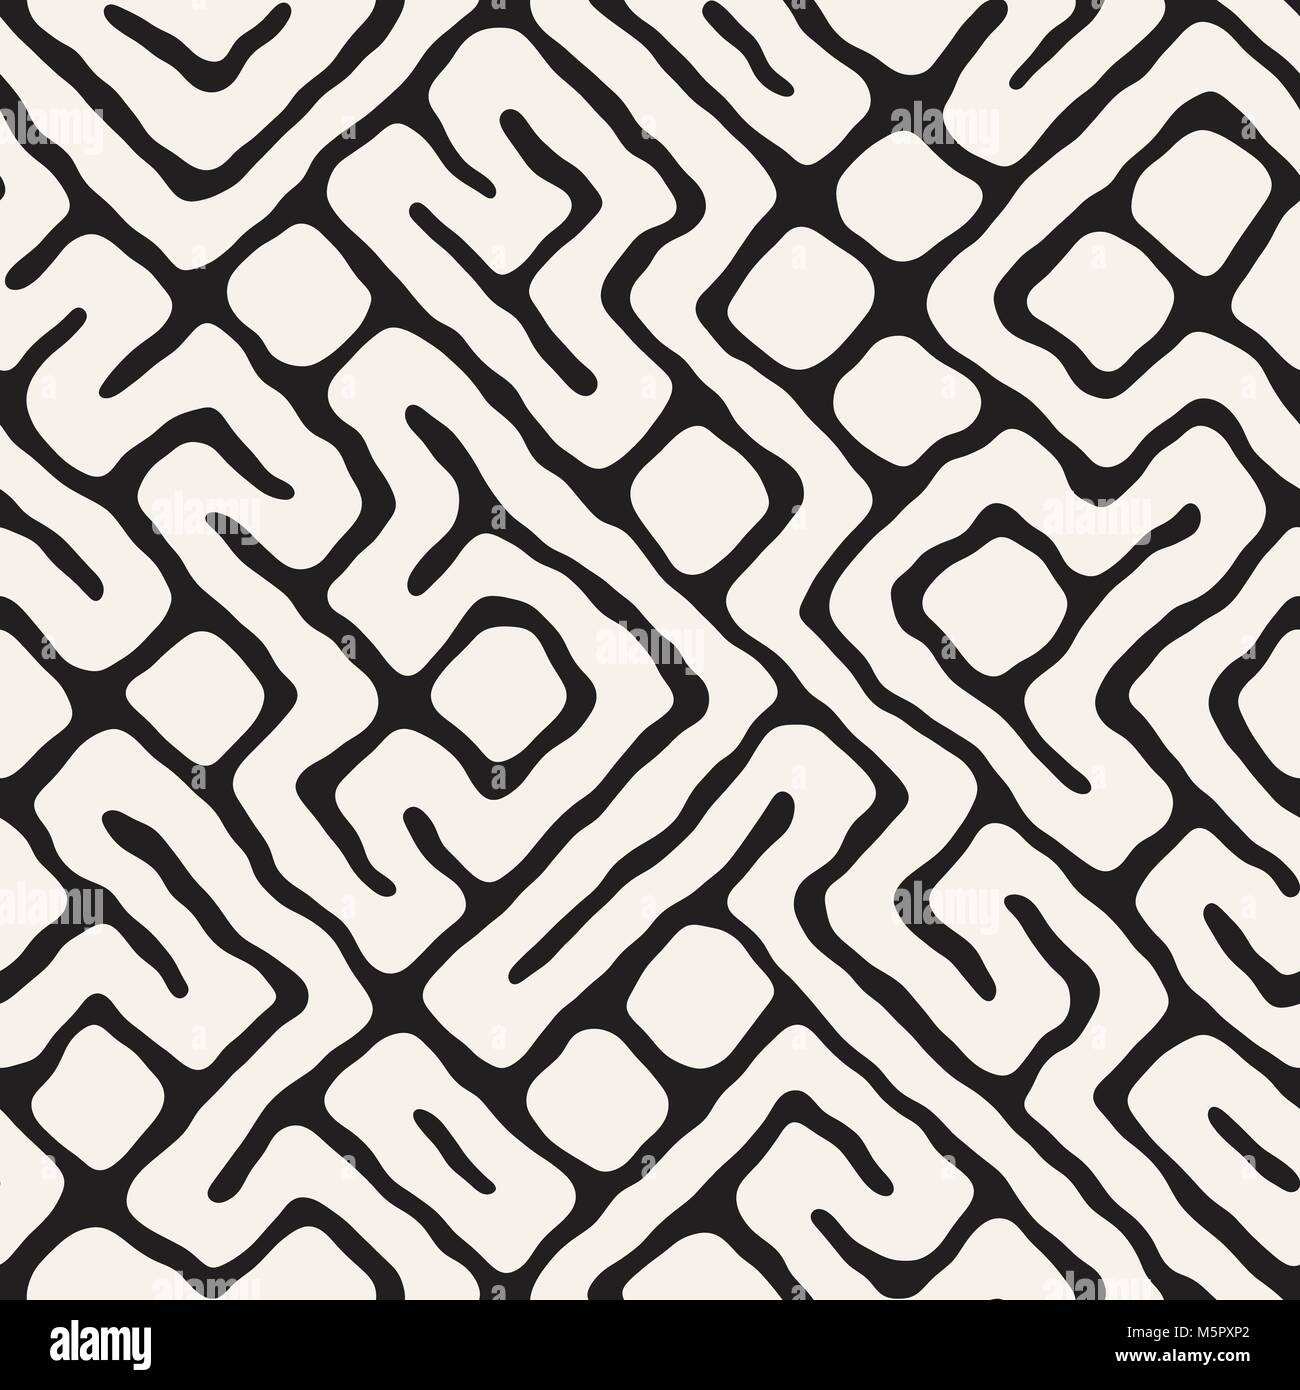 Nahtlose Muster mit Labyrinth Linien. Monochrome abstrakt Hintergrund. Vektor Hand gezeichneten Labyrinth. Stock Vektor